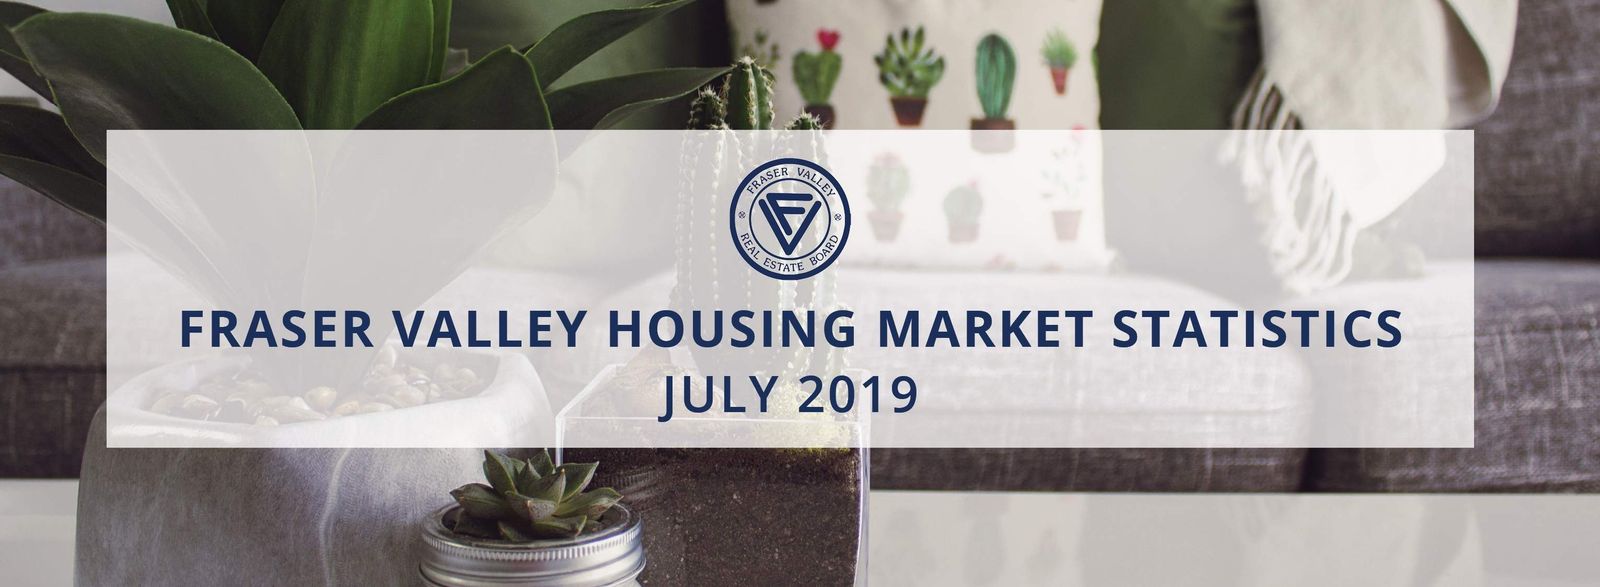 Fraser Valley home sales rebound in July after lackluster June